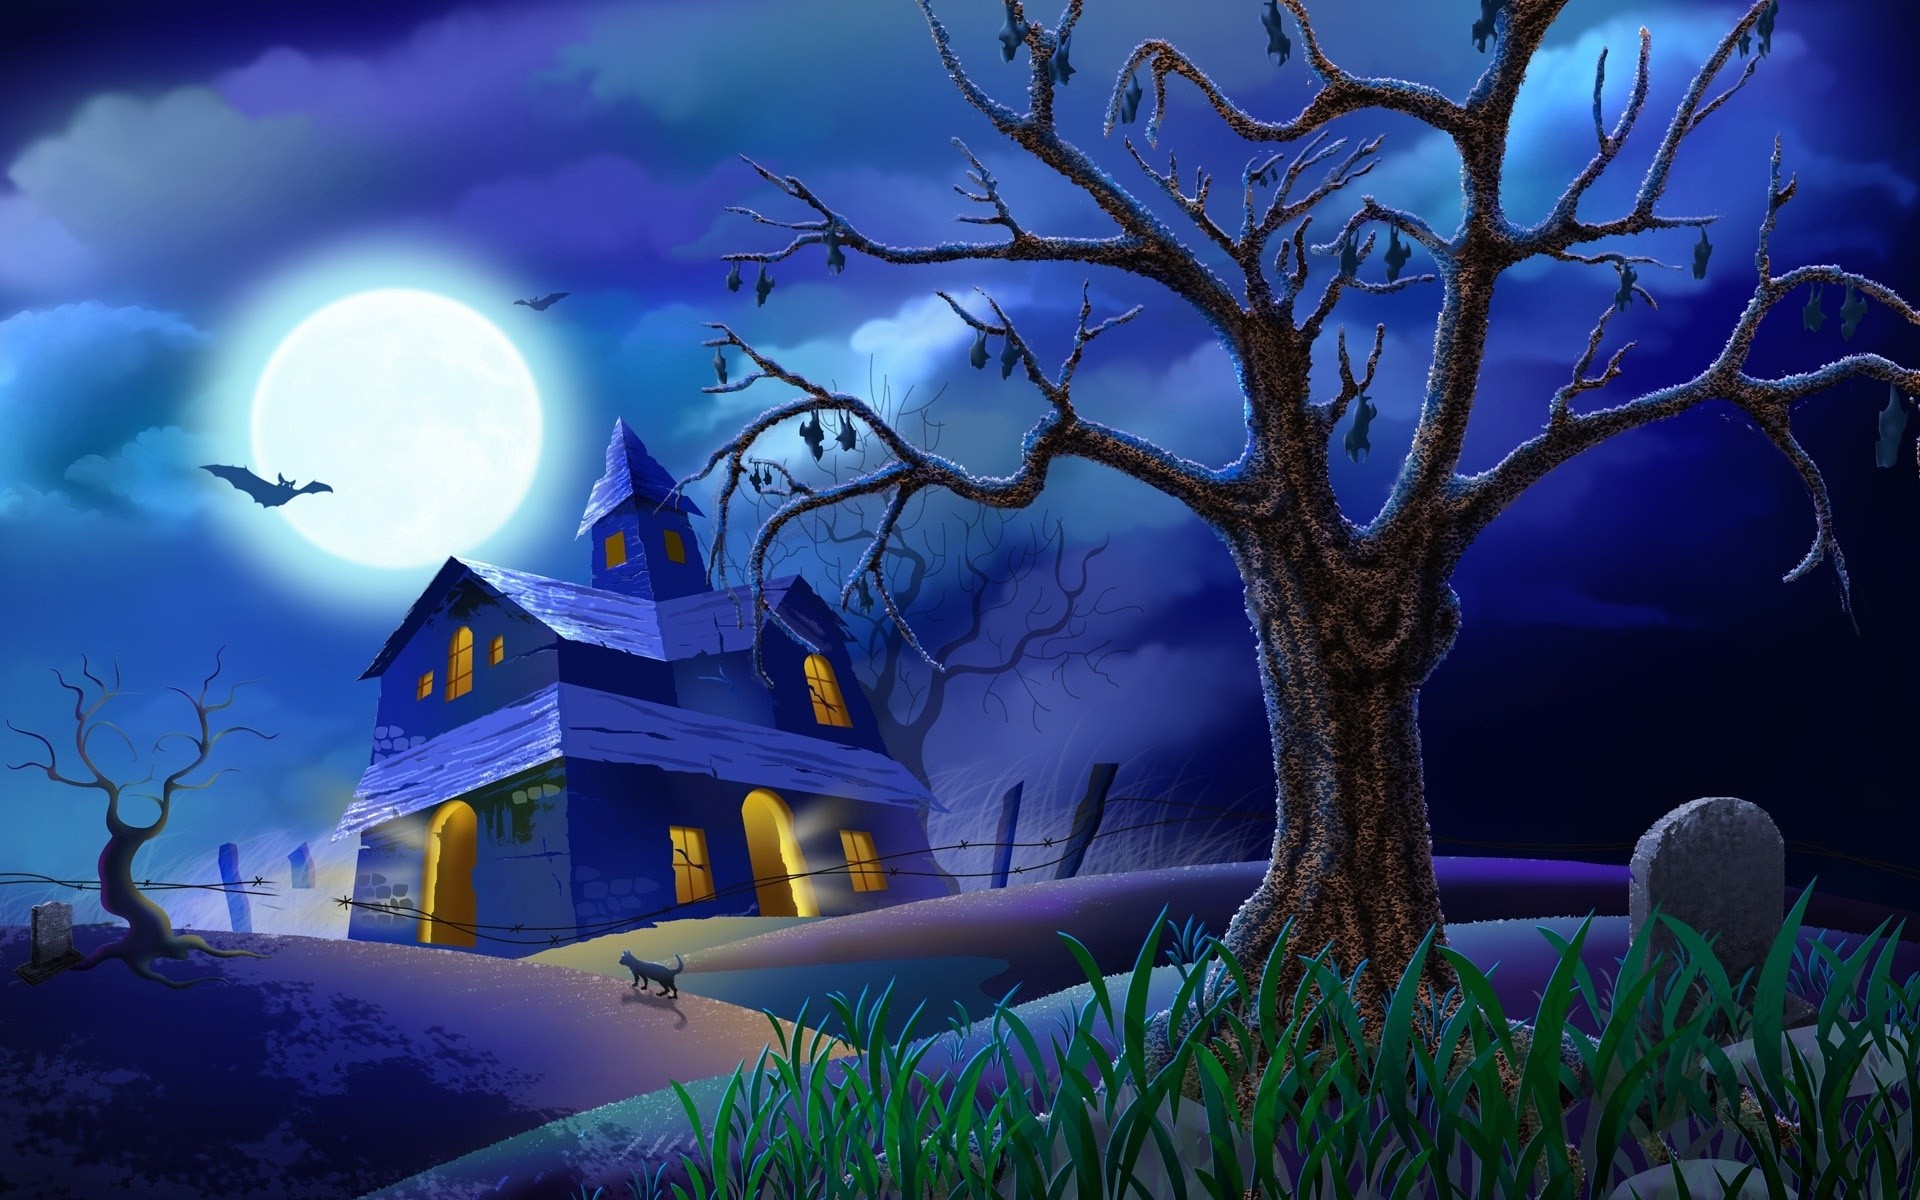 хэллоуин луна дерево вечером жутковато силуэт сумрак небо свет мерещиться природа темный пейзаж полночь магия норовистый рассвет тайна страшно